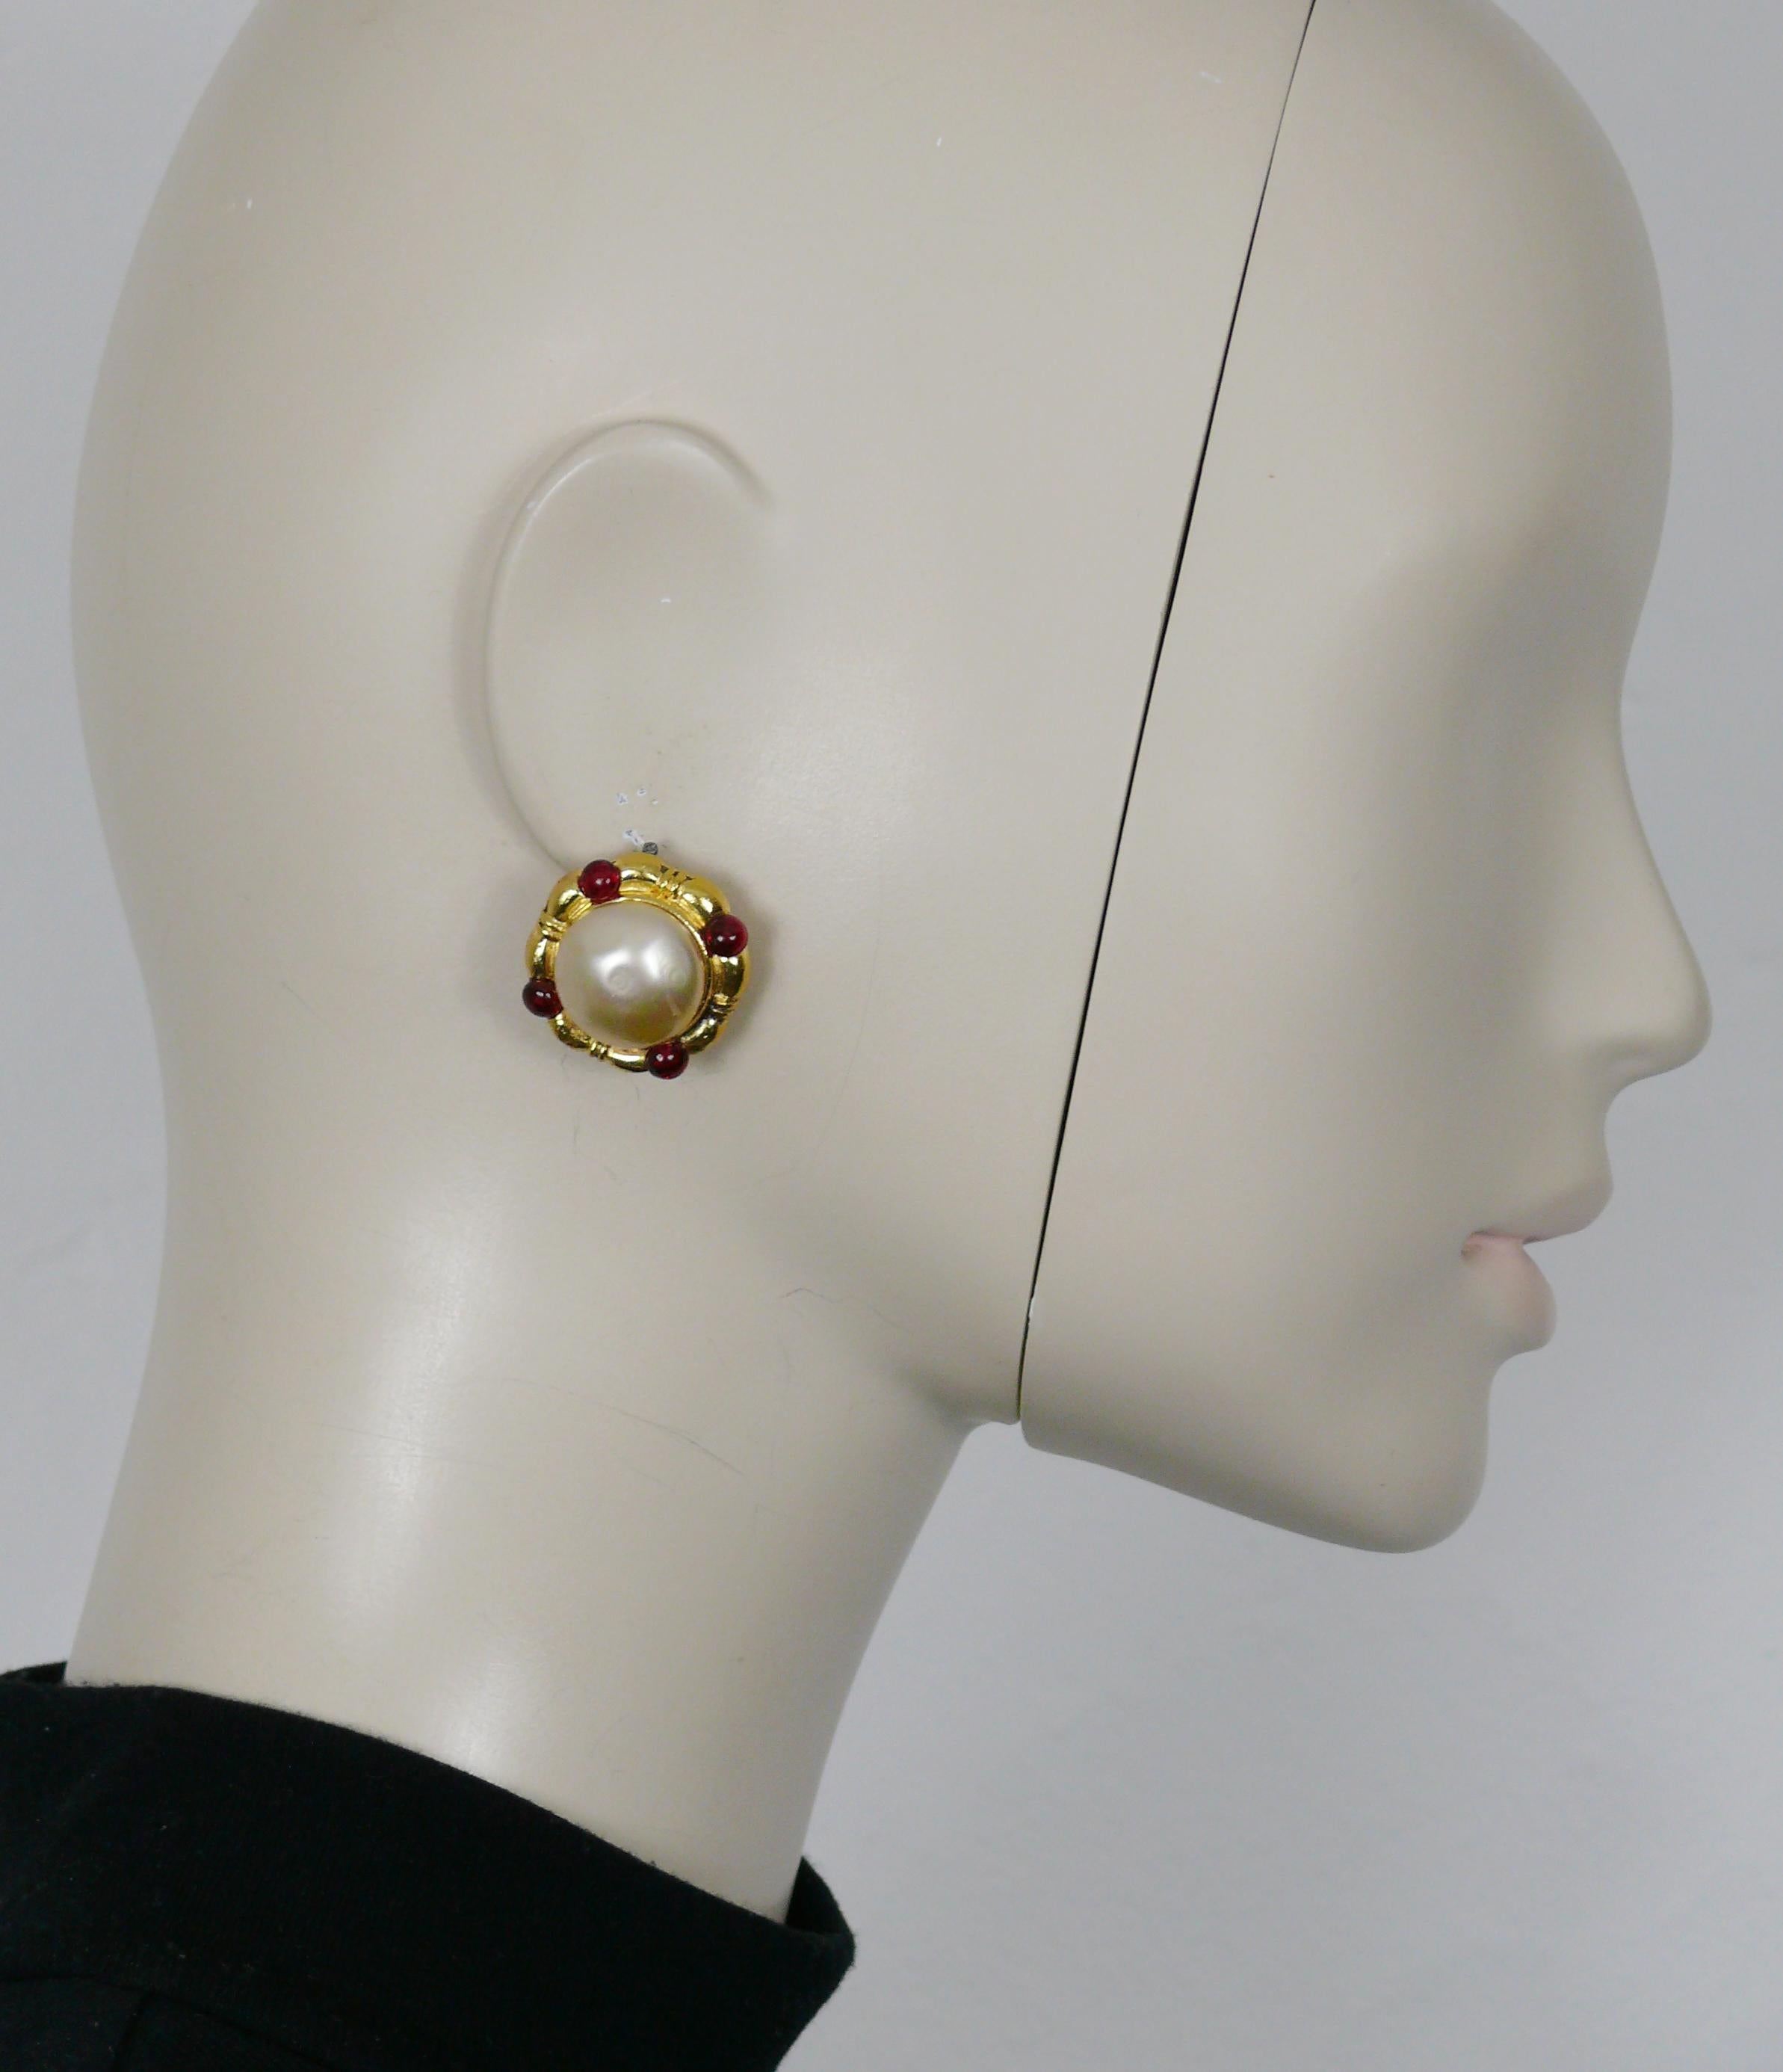 Boucles d'oreilles vintage CHANEL en or, ornées d'une fausse perle en forme de dôme et de quatre cabochons en verre rouge MAISON GRIPOIX.

Gaufrage sur une boucle d'oreille CHANEL 1982.
Gaufré sur l'autre boucle d'oreille CHANEL Déposé